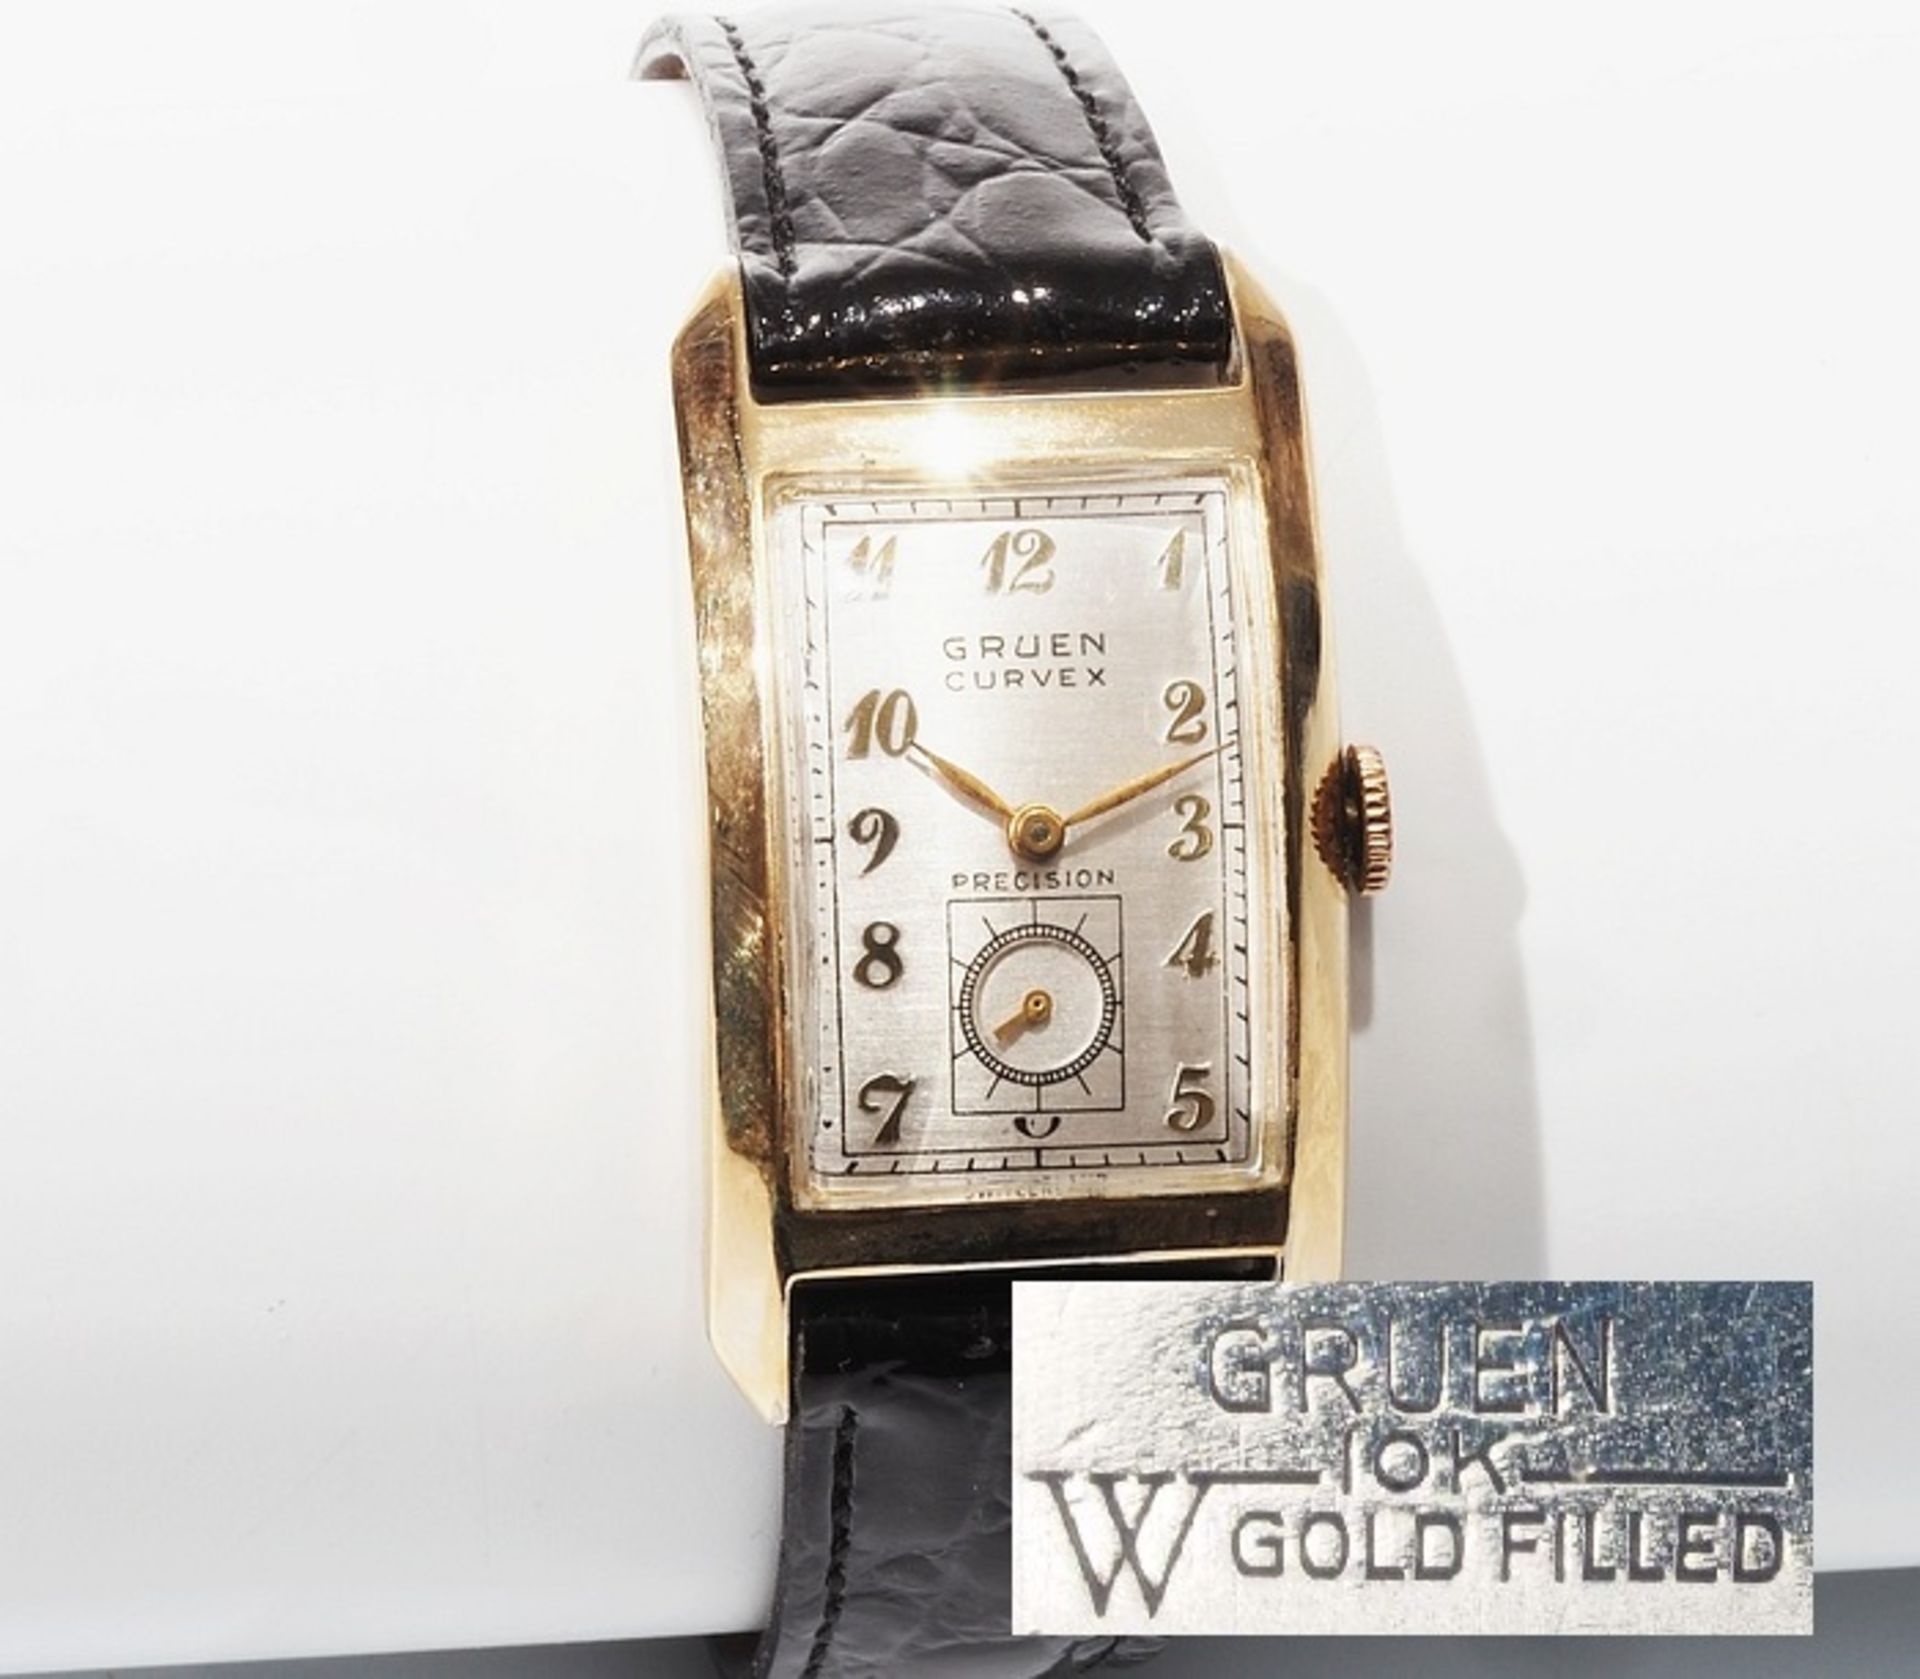 Armbanduhr (Unisex) von Gruen Curvex. "Vintage", Handaufzug, 10 K Gold filled (vergoldet). Hochre